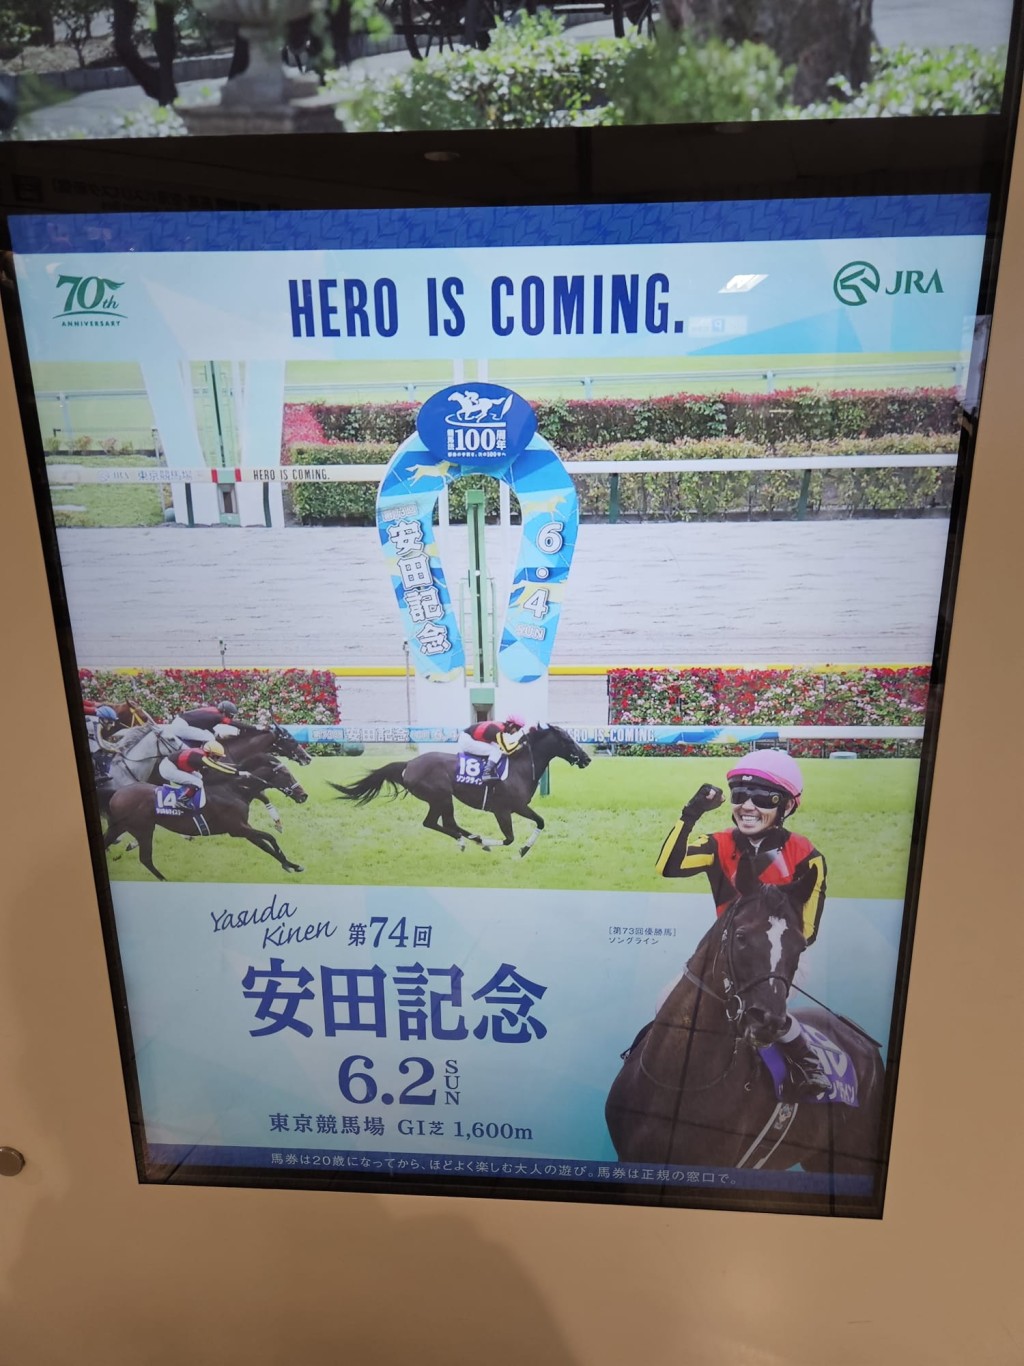 大赛前在日本东京街头，见不少有关安田纪念赛的宣传广告。